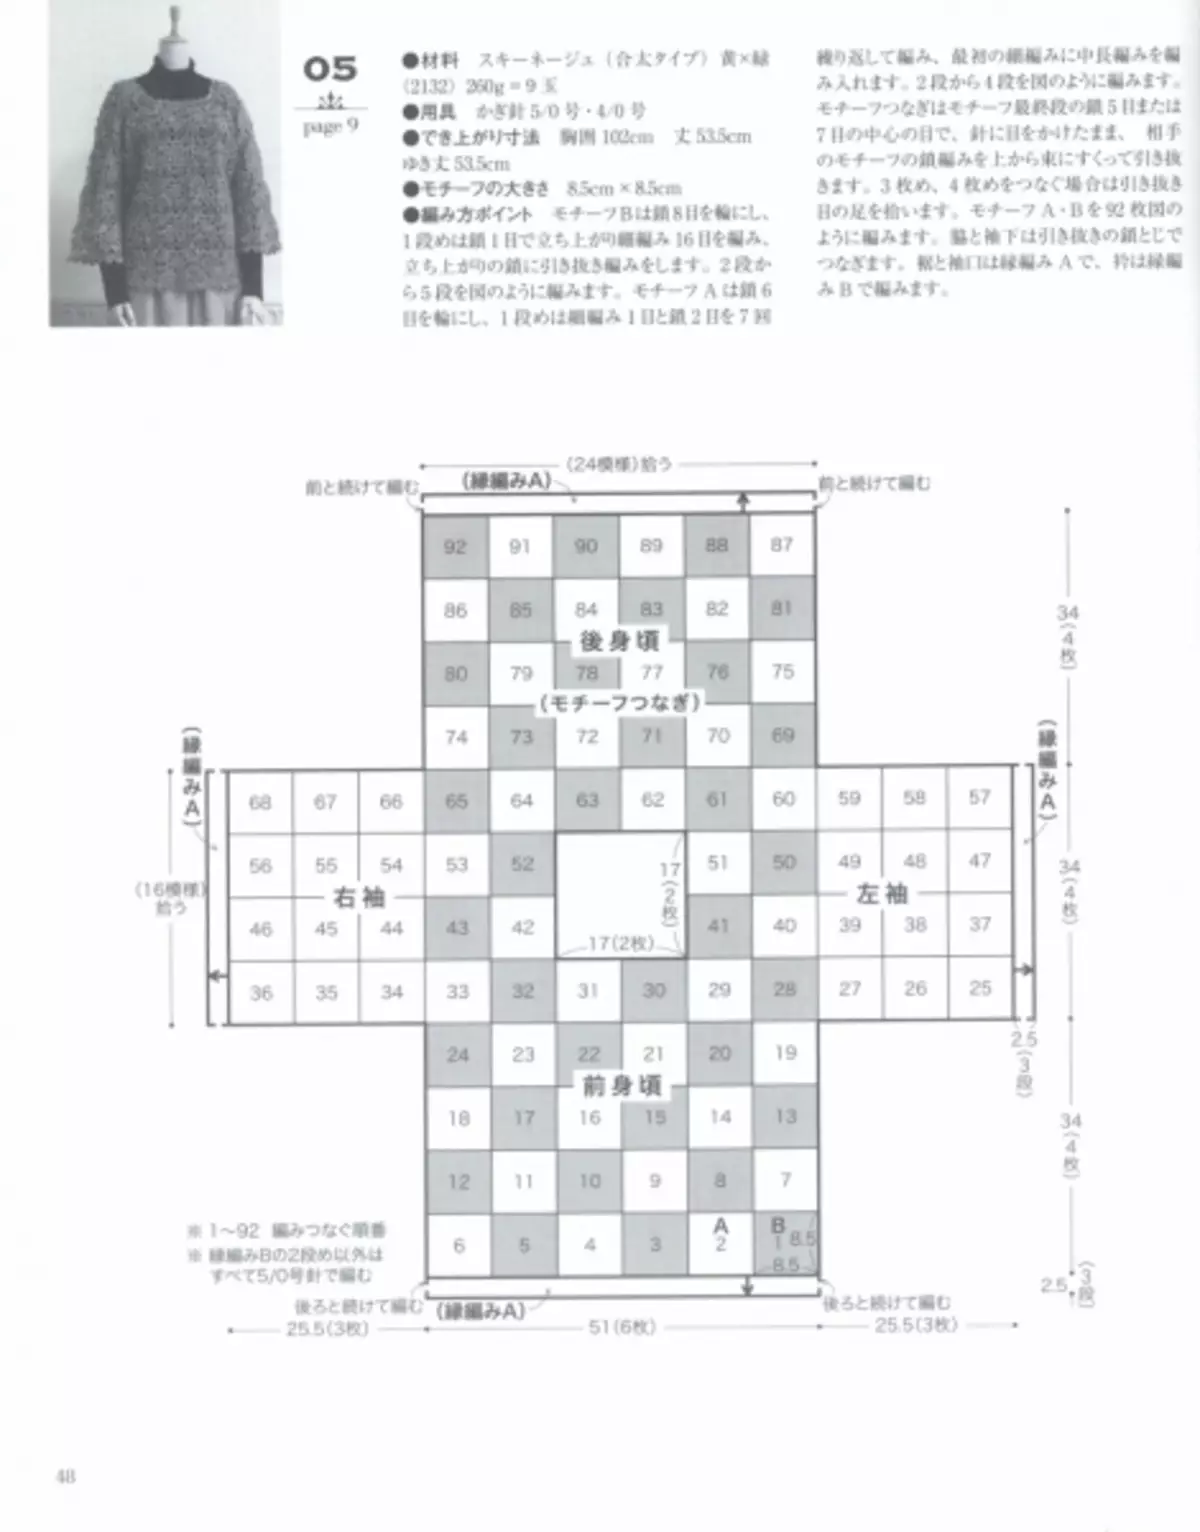 Japanese ապոնական ամսագիրը «Թող տրեր 80554»: Ձմեռ